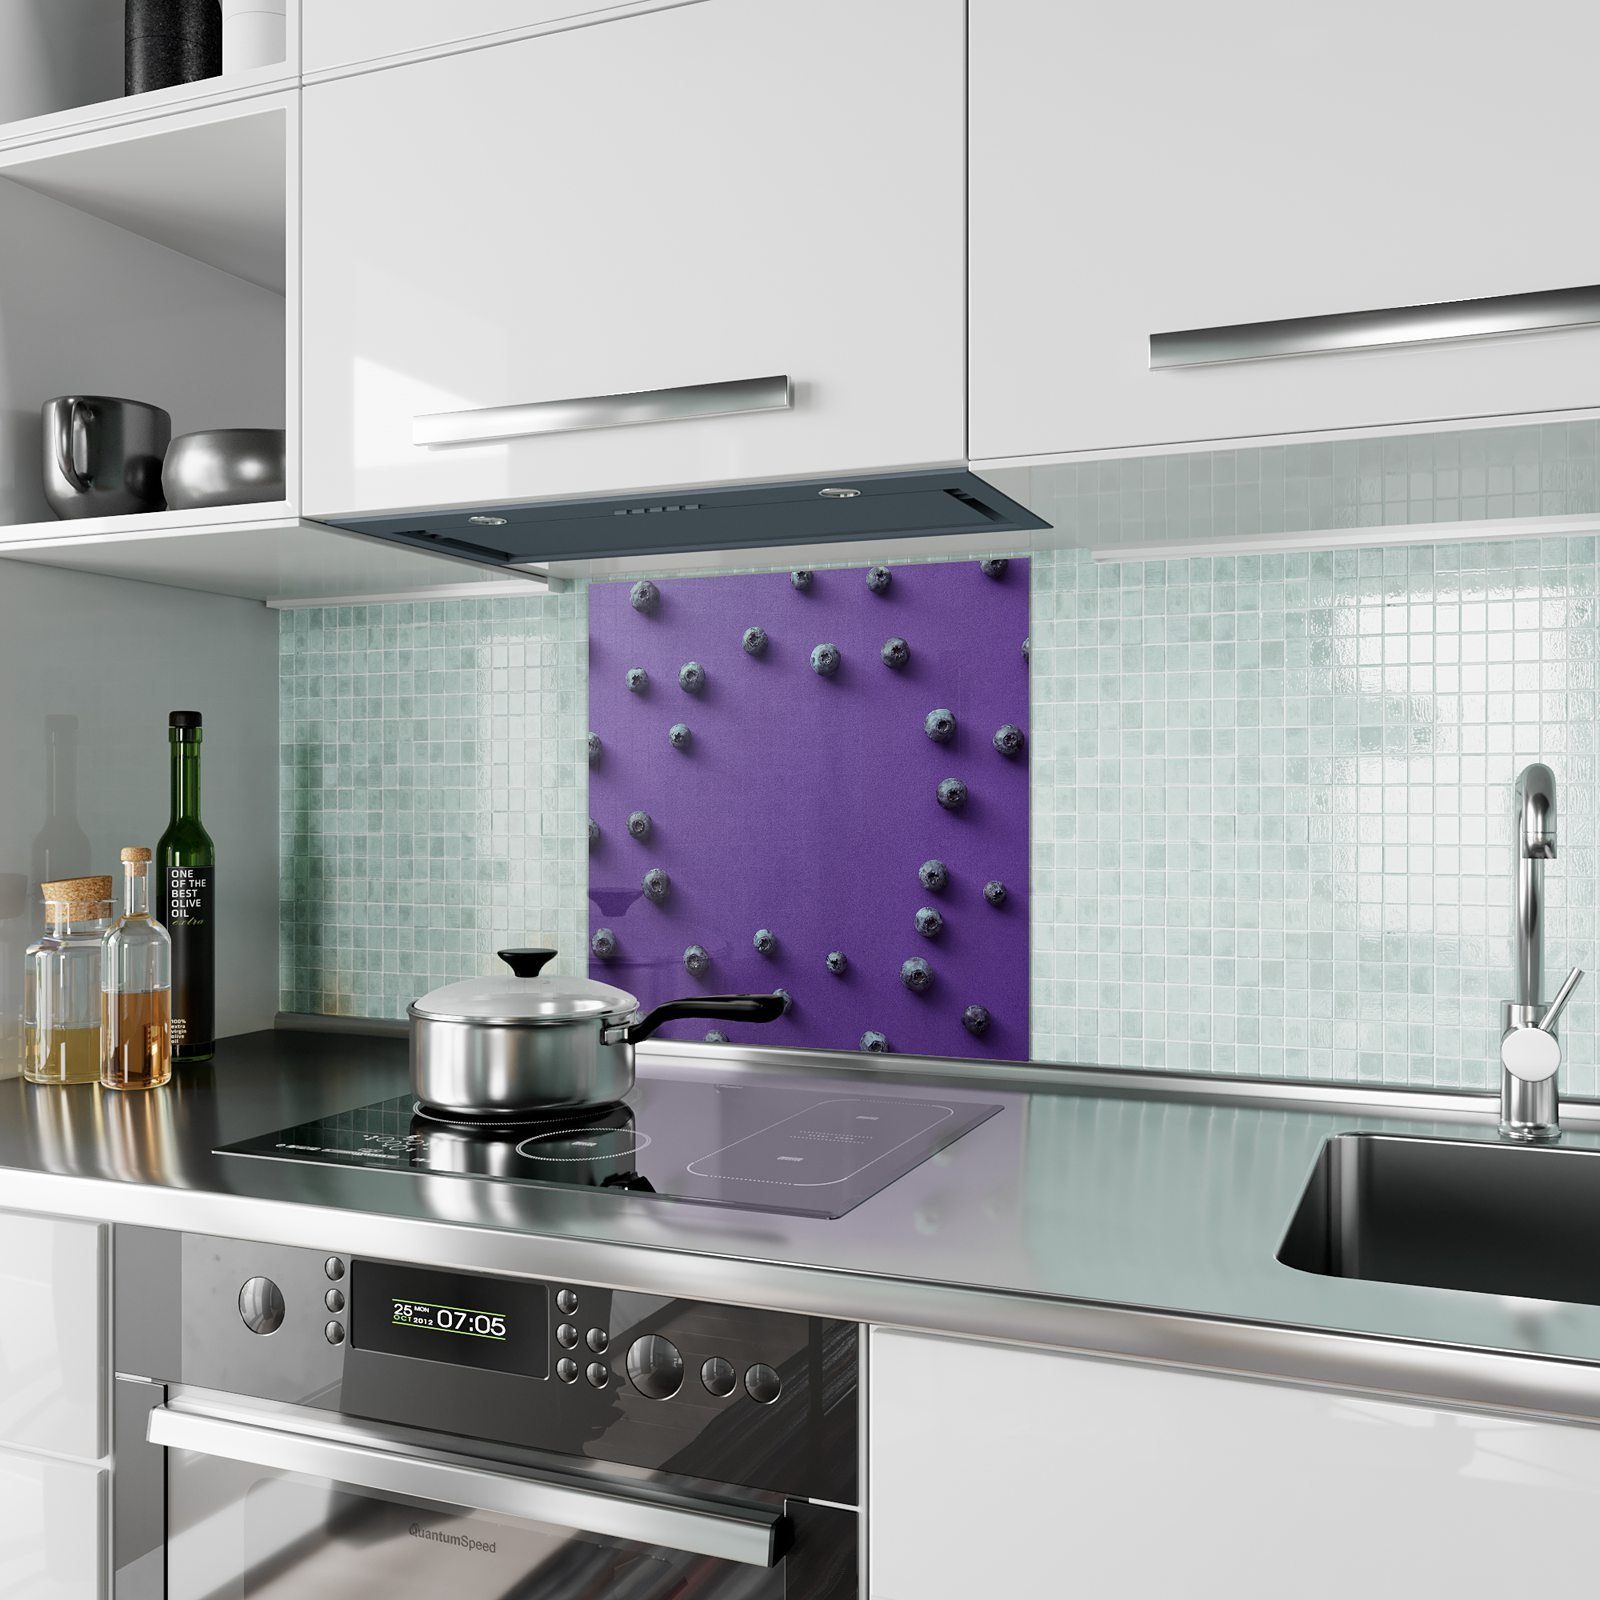 Primedeco Spritzschutz Küchenrückwand Motiv mit Glas Heidelbeeren verteilt Küchenrückwand